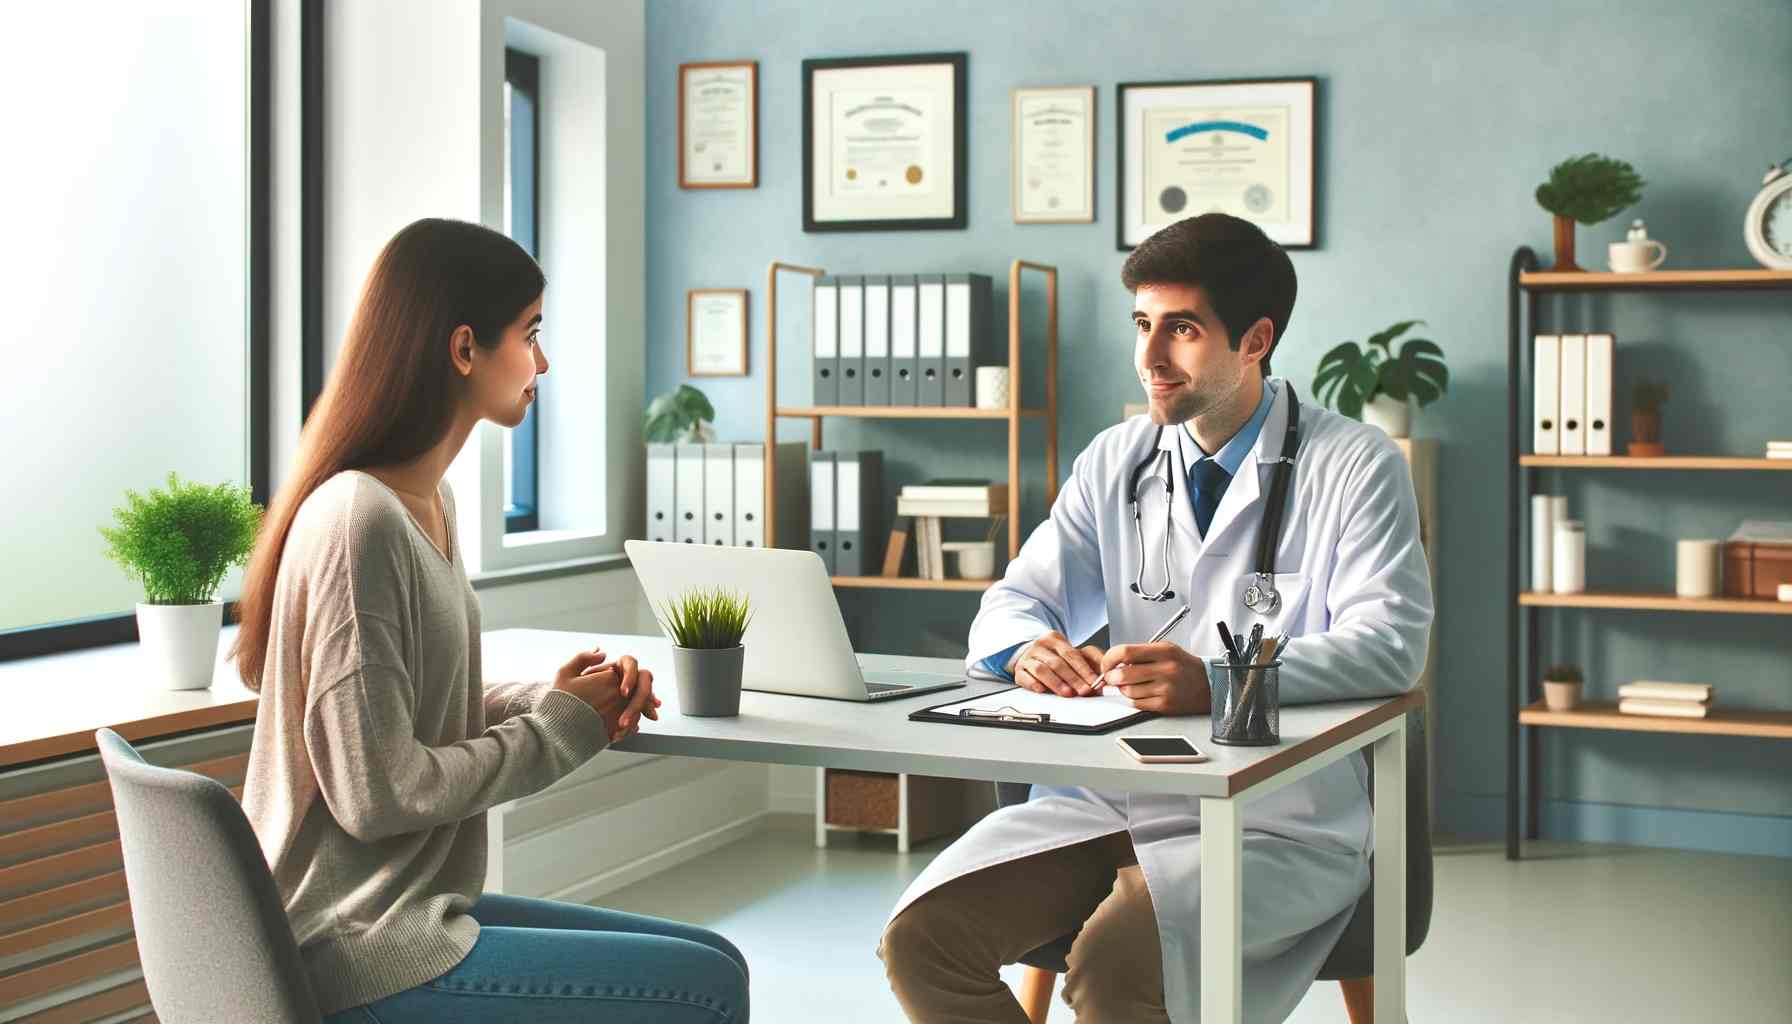 Egy professzionális és empatikus jelenet, amelyben egy személy egy orvossal konzultál egy világos, modern orvosi rendelőben. Az orvos, fehér köpenyt visel, és egy st